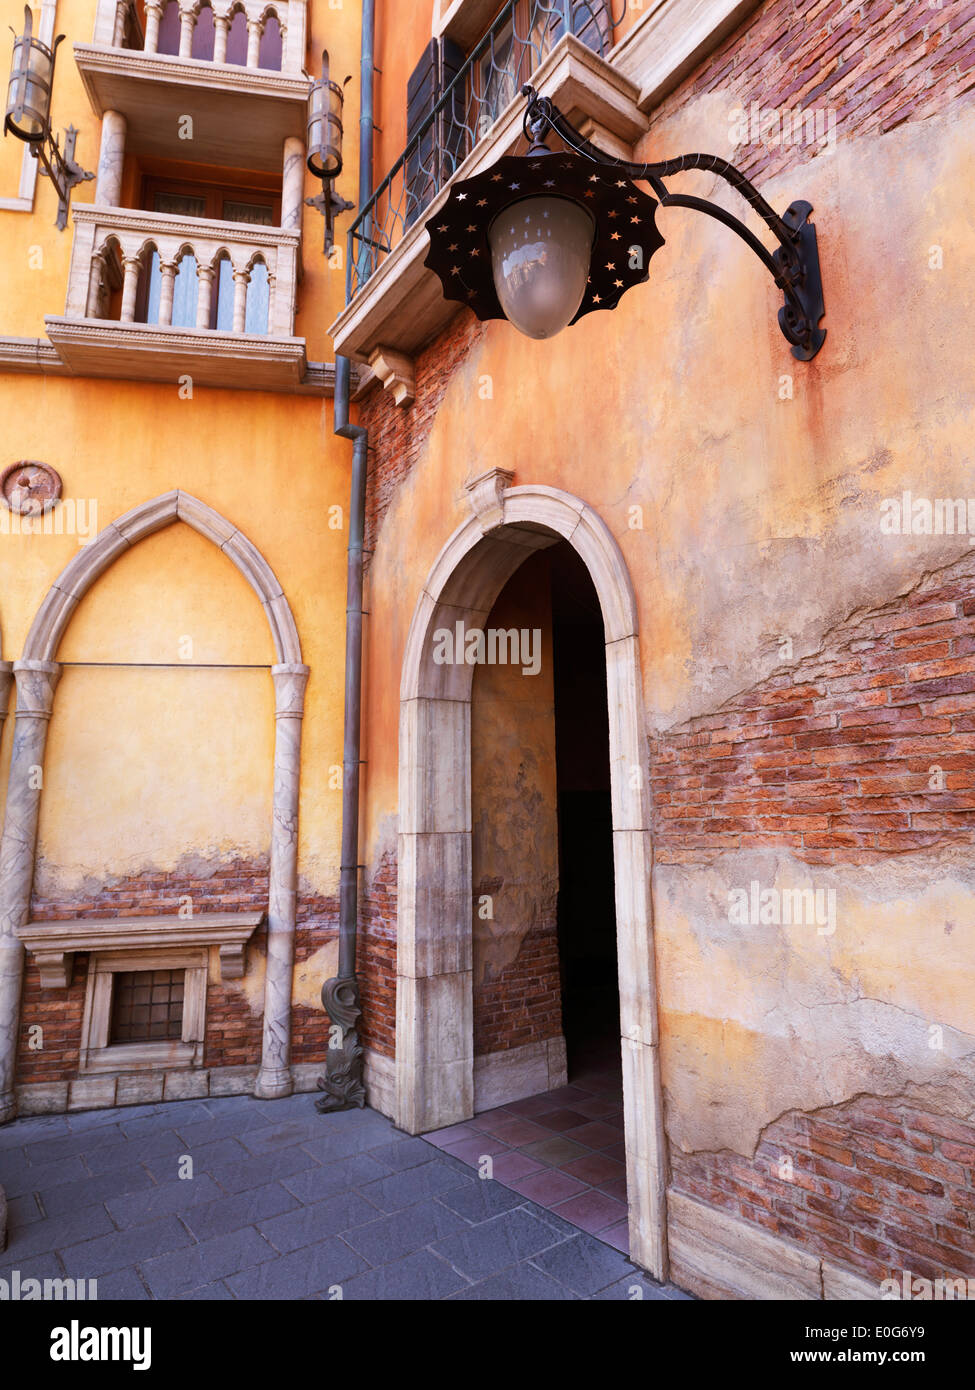 Dans un passage d'Archway croner de vieux bâtiments dans une architecture de style gothique vénitien. Banque D'Images